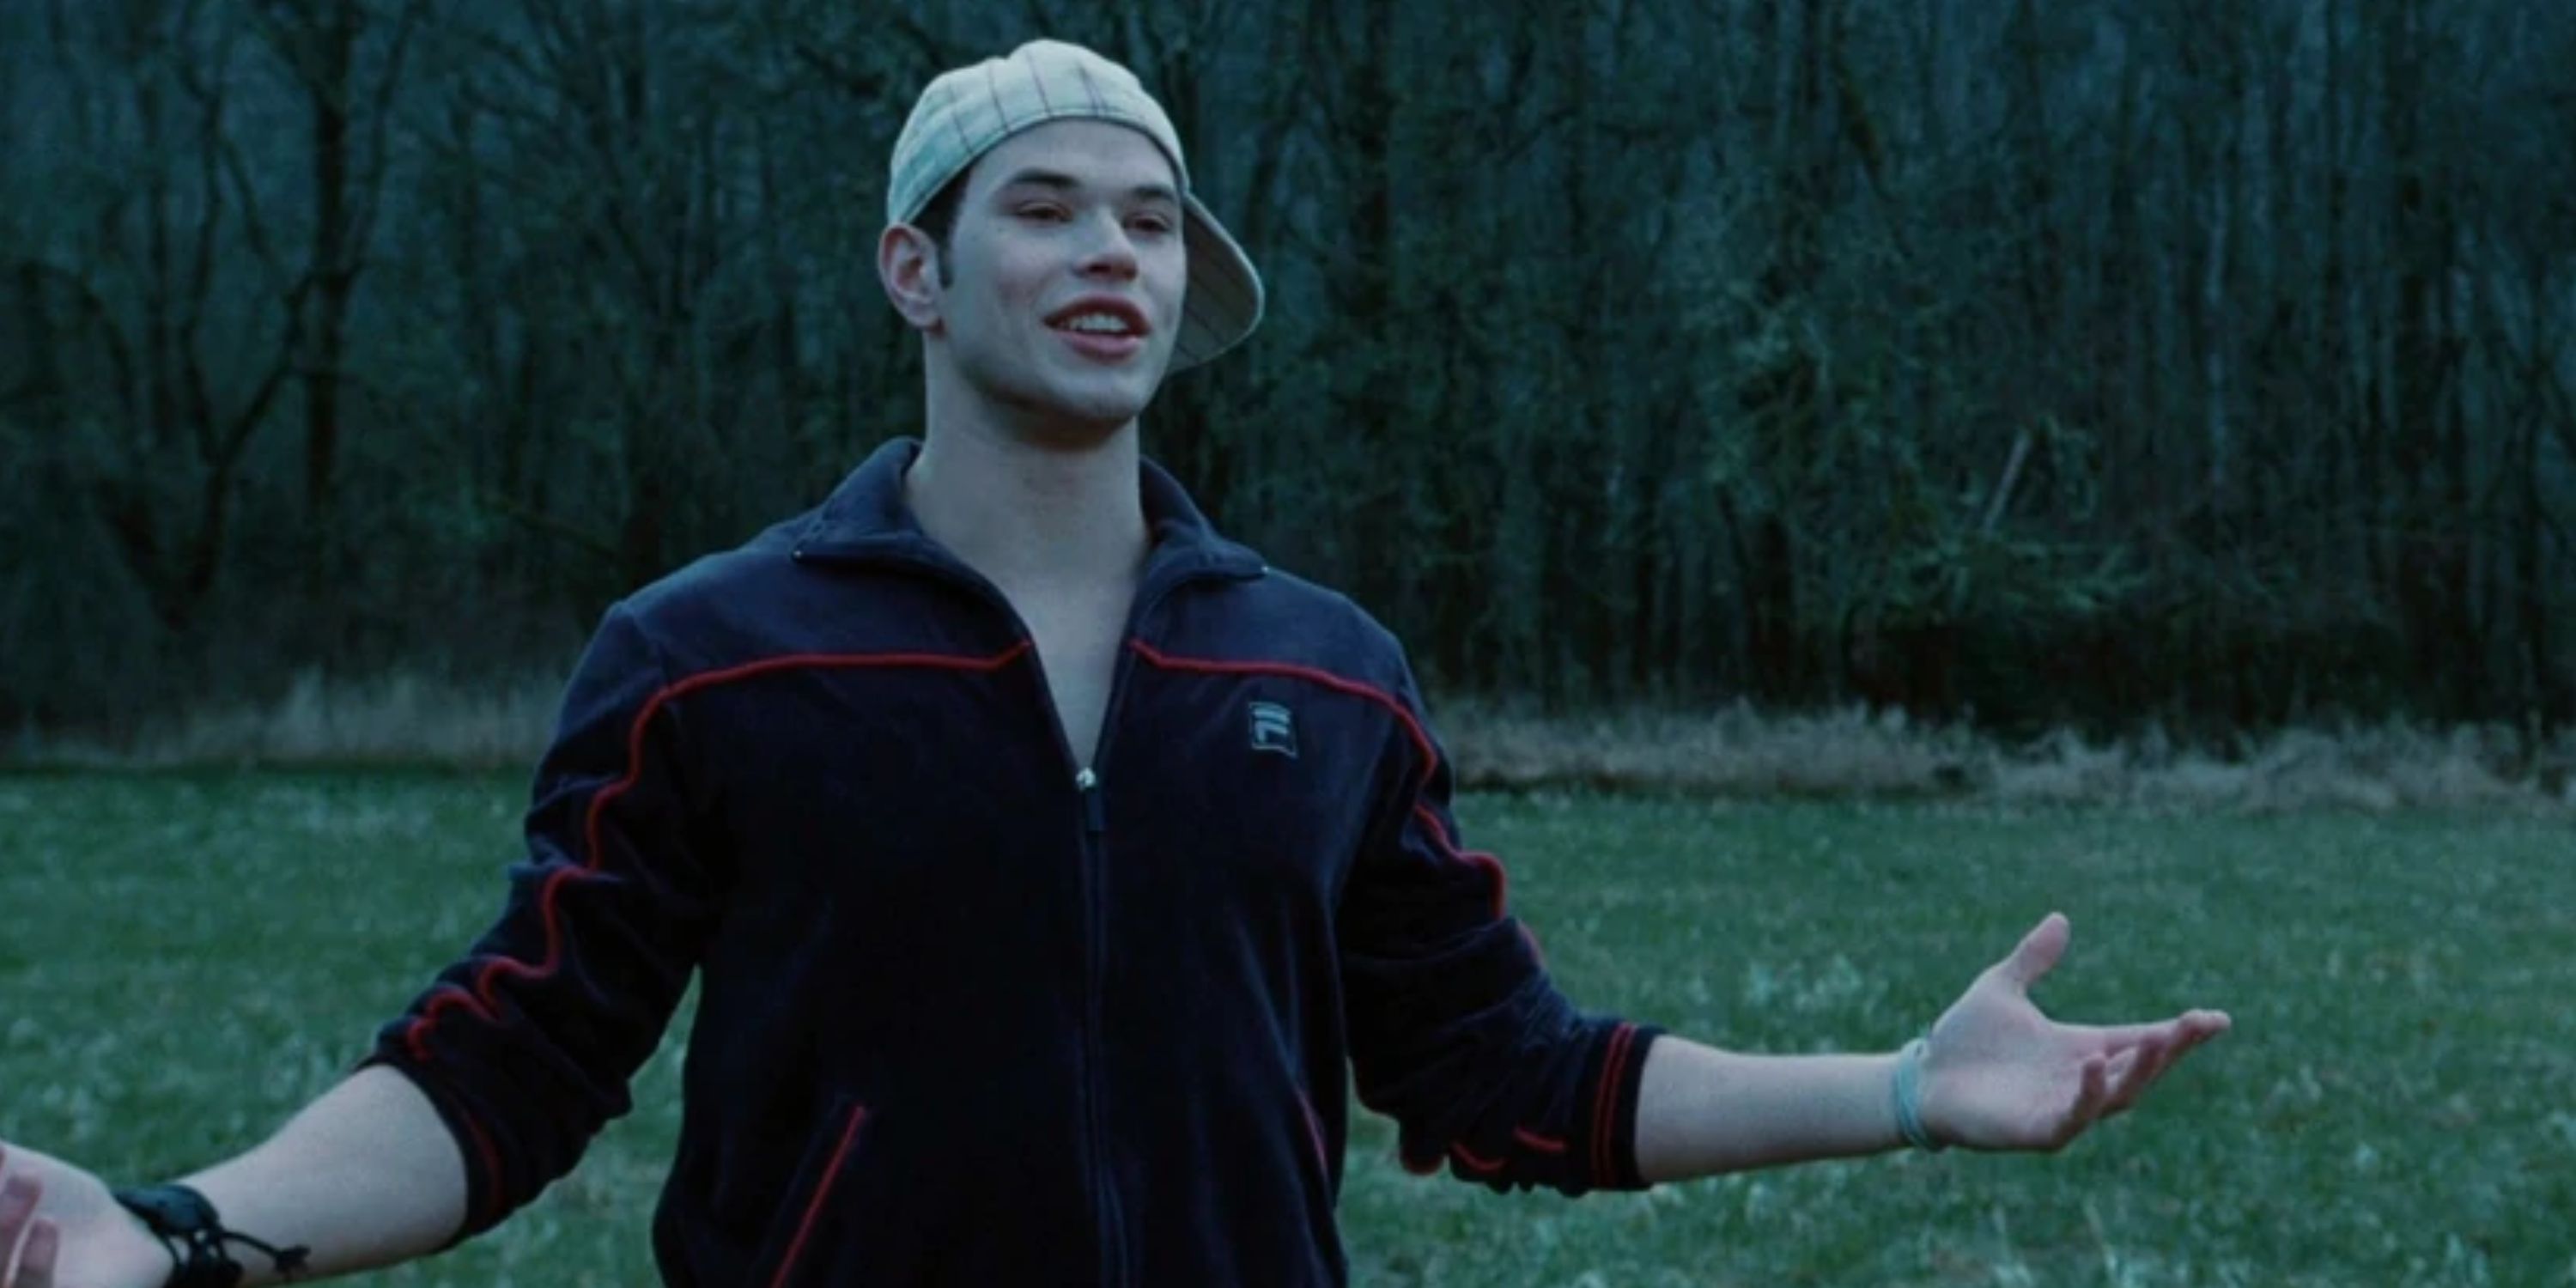 Kellan Lutz as Emmett Cullen in 'Twilight', wearing a backwards baseball cap in a field.